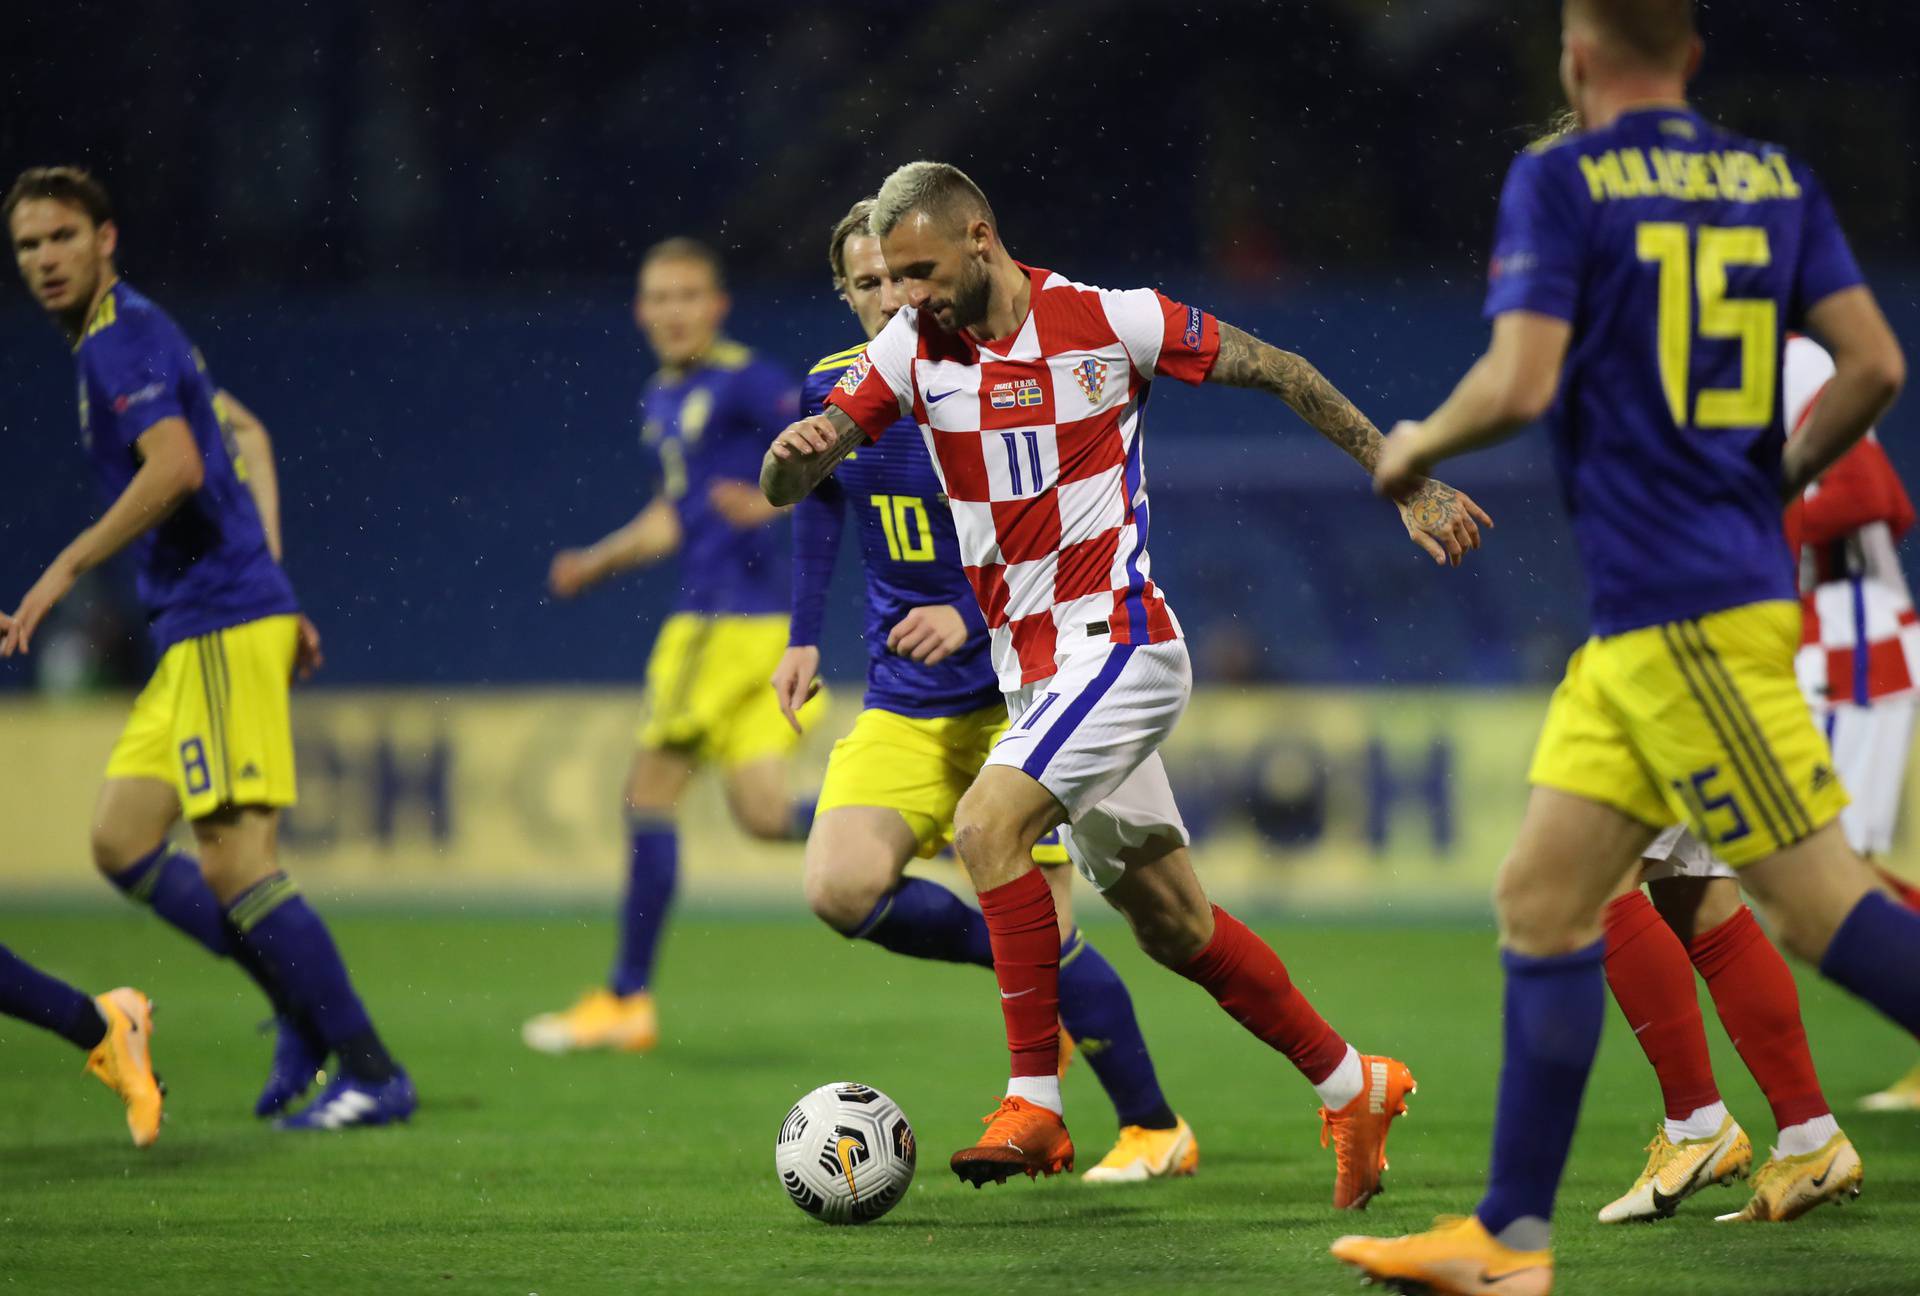 Zagreb: Hrvatska ugostila Švedsku u 3. kolu Lige nacija